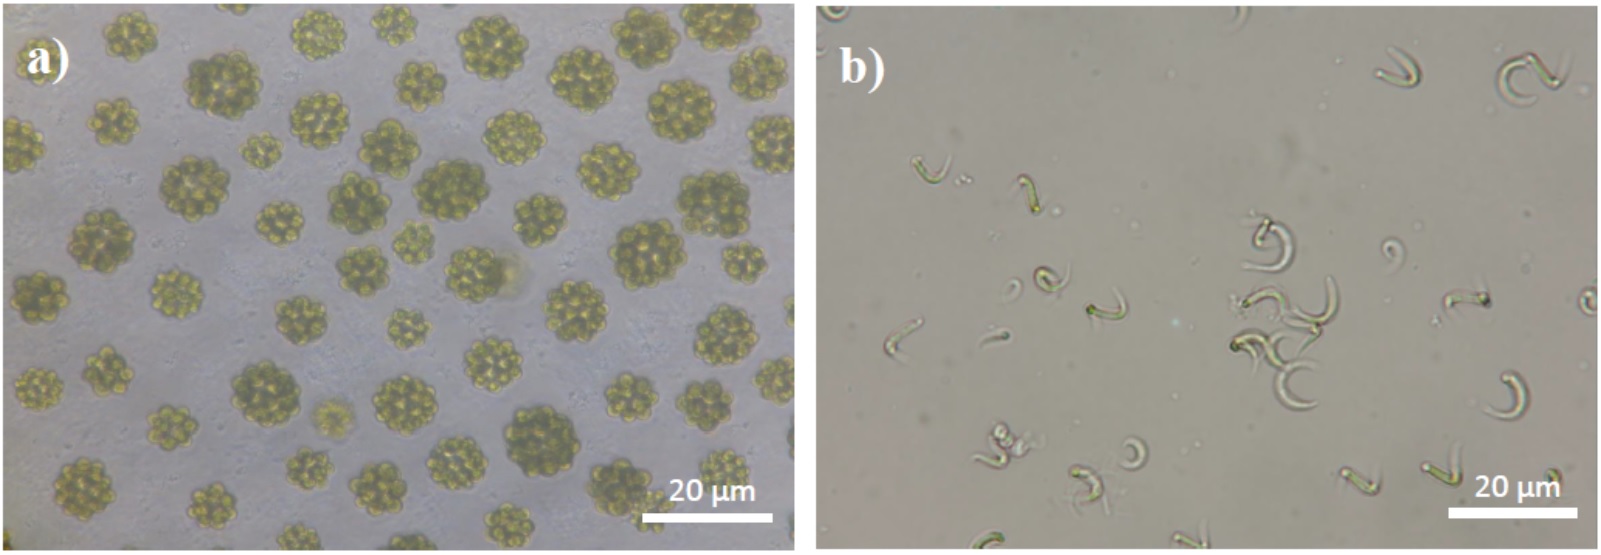 マレーシアで単離した微細藻類 a)コエラストルムとb)モノラフィジウム